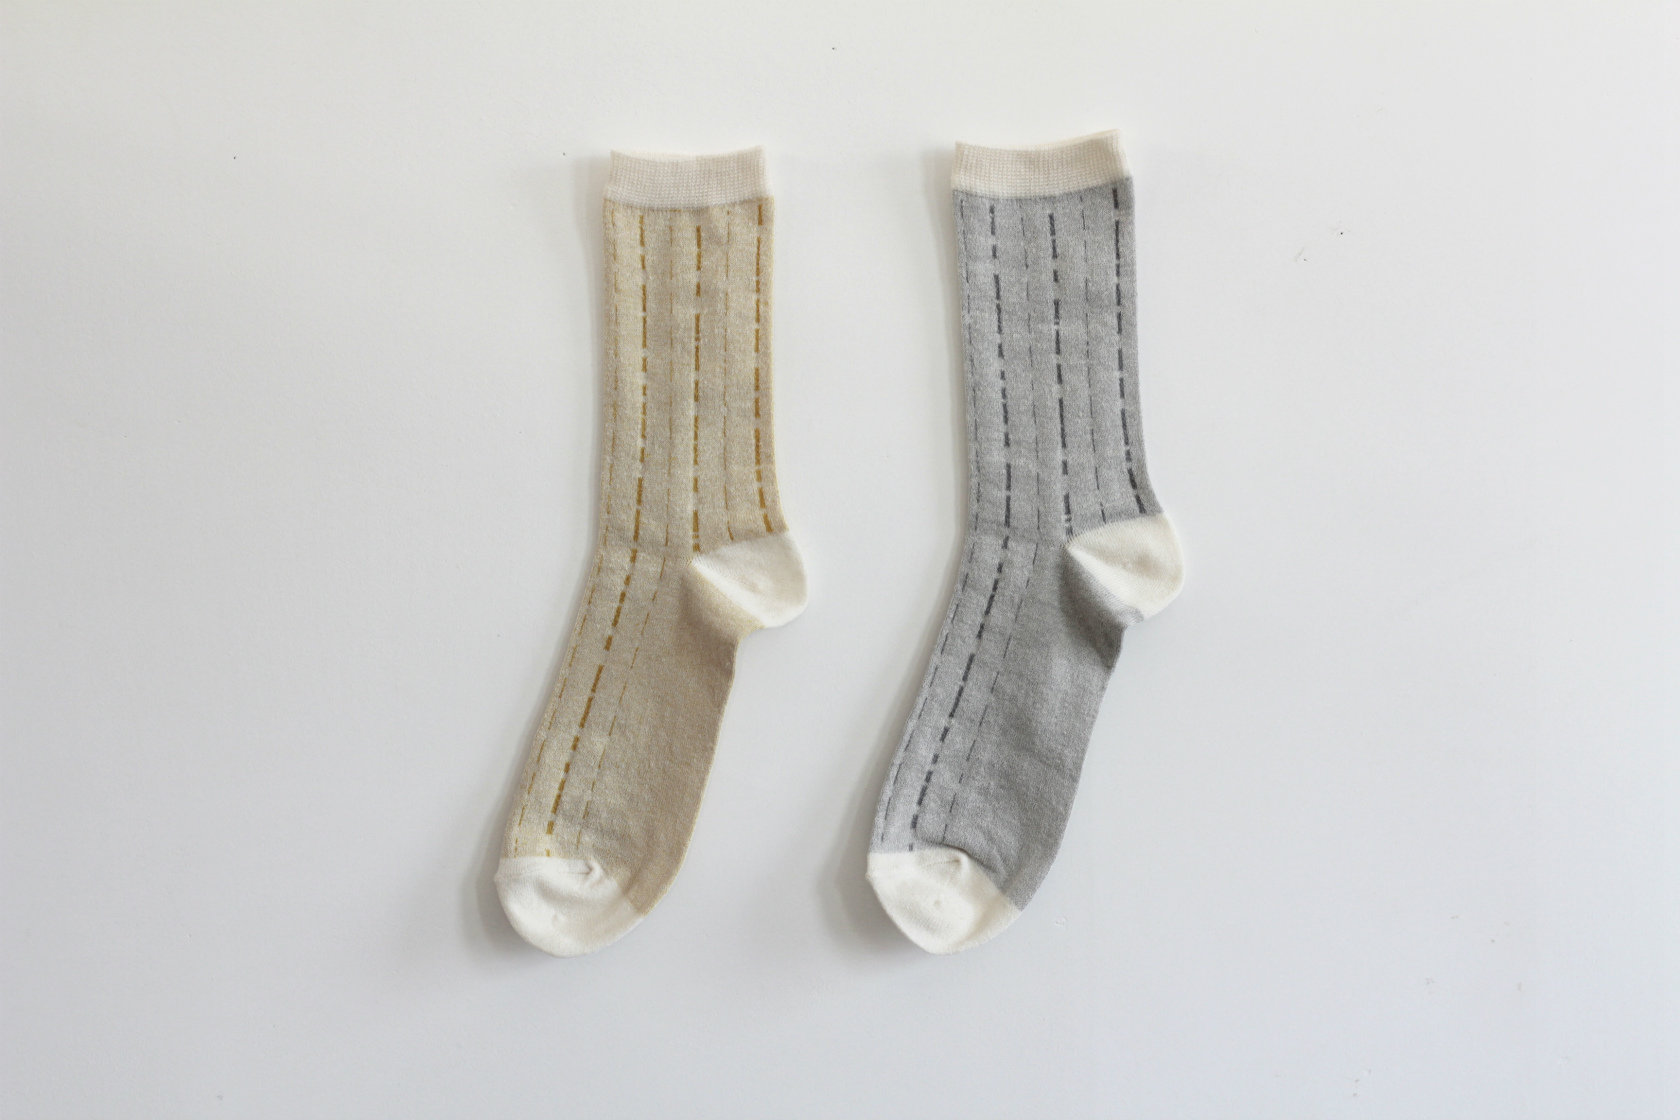 シャリ感のある綿麻クレープ糸で編立てた　薄地の靴下です。縦に流れるステッチは　雨垂れをイメージしてデザインしました。イエローとグレーの2色展開です。